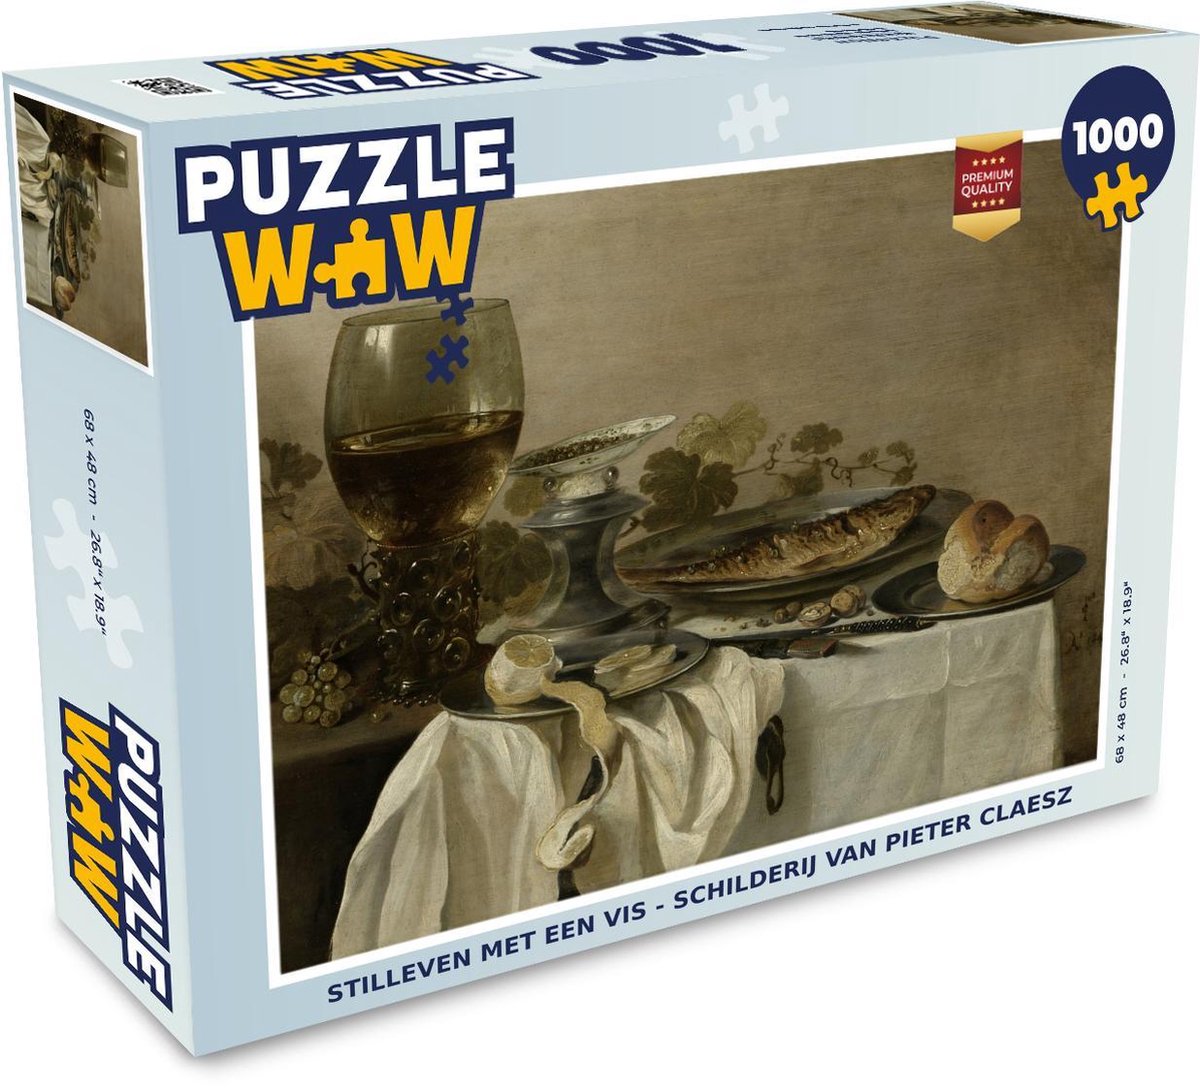 Afbeelding van product Puzzel 1000 stukjes volwassenen Pieter Claesz (RM) 1000 stukjes - Stilleven met een vis - Schilderij van Pieter Claesz puzzel 1000 stukjes - PuzzleWow heeft +100000 puzzels